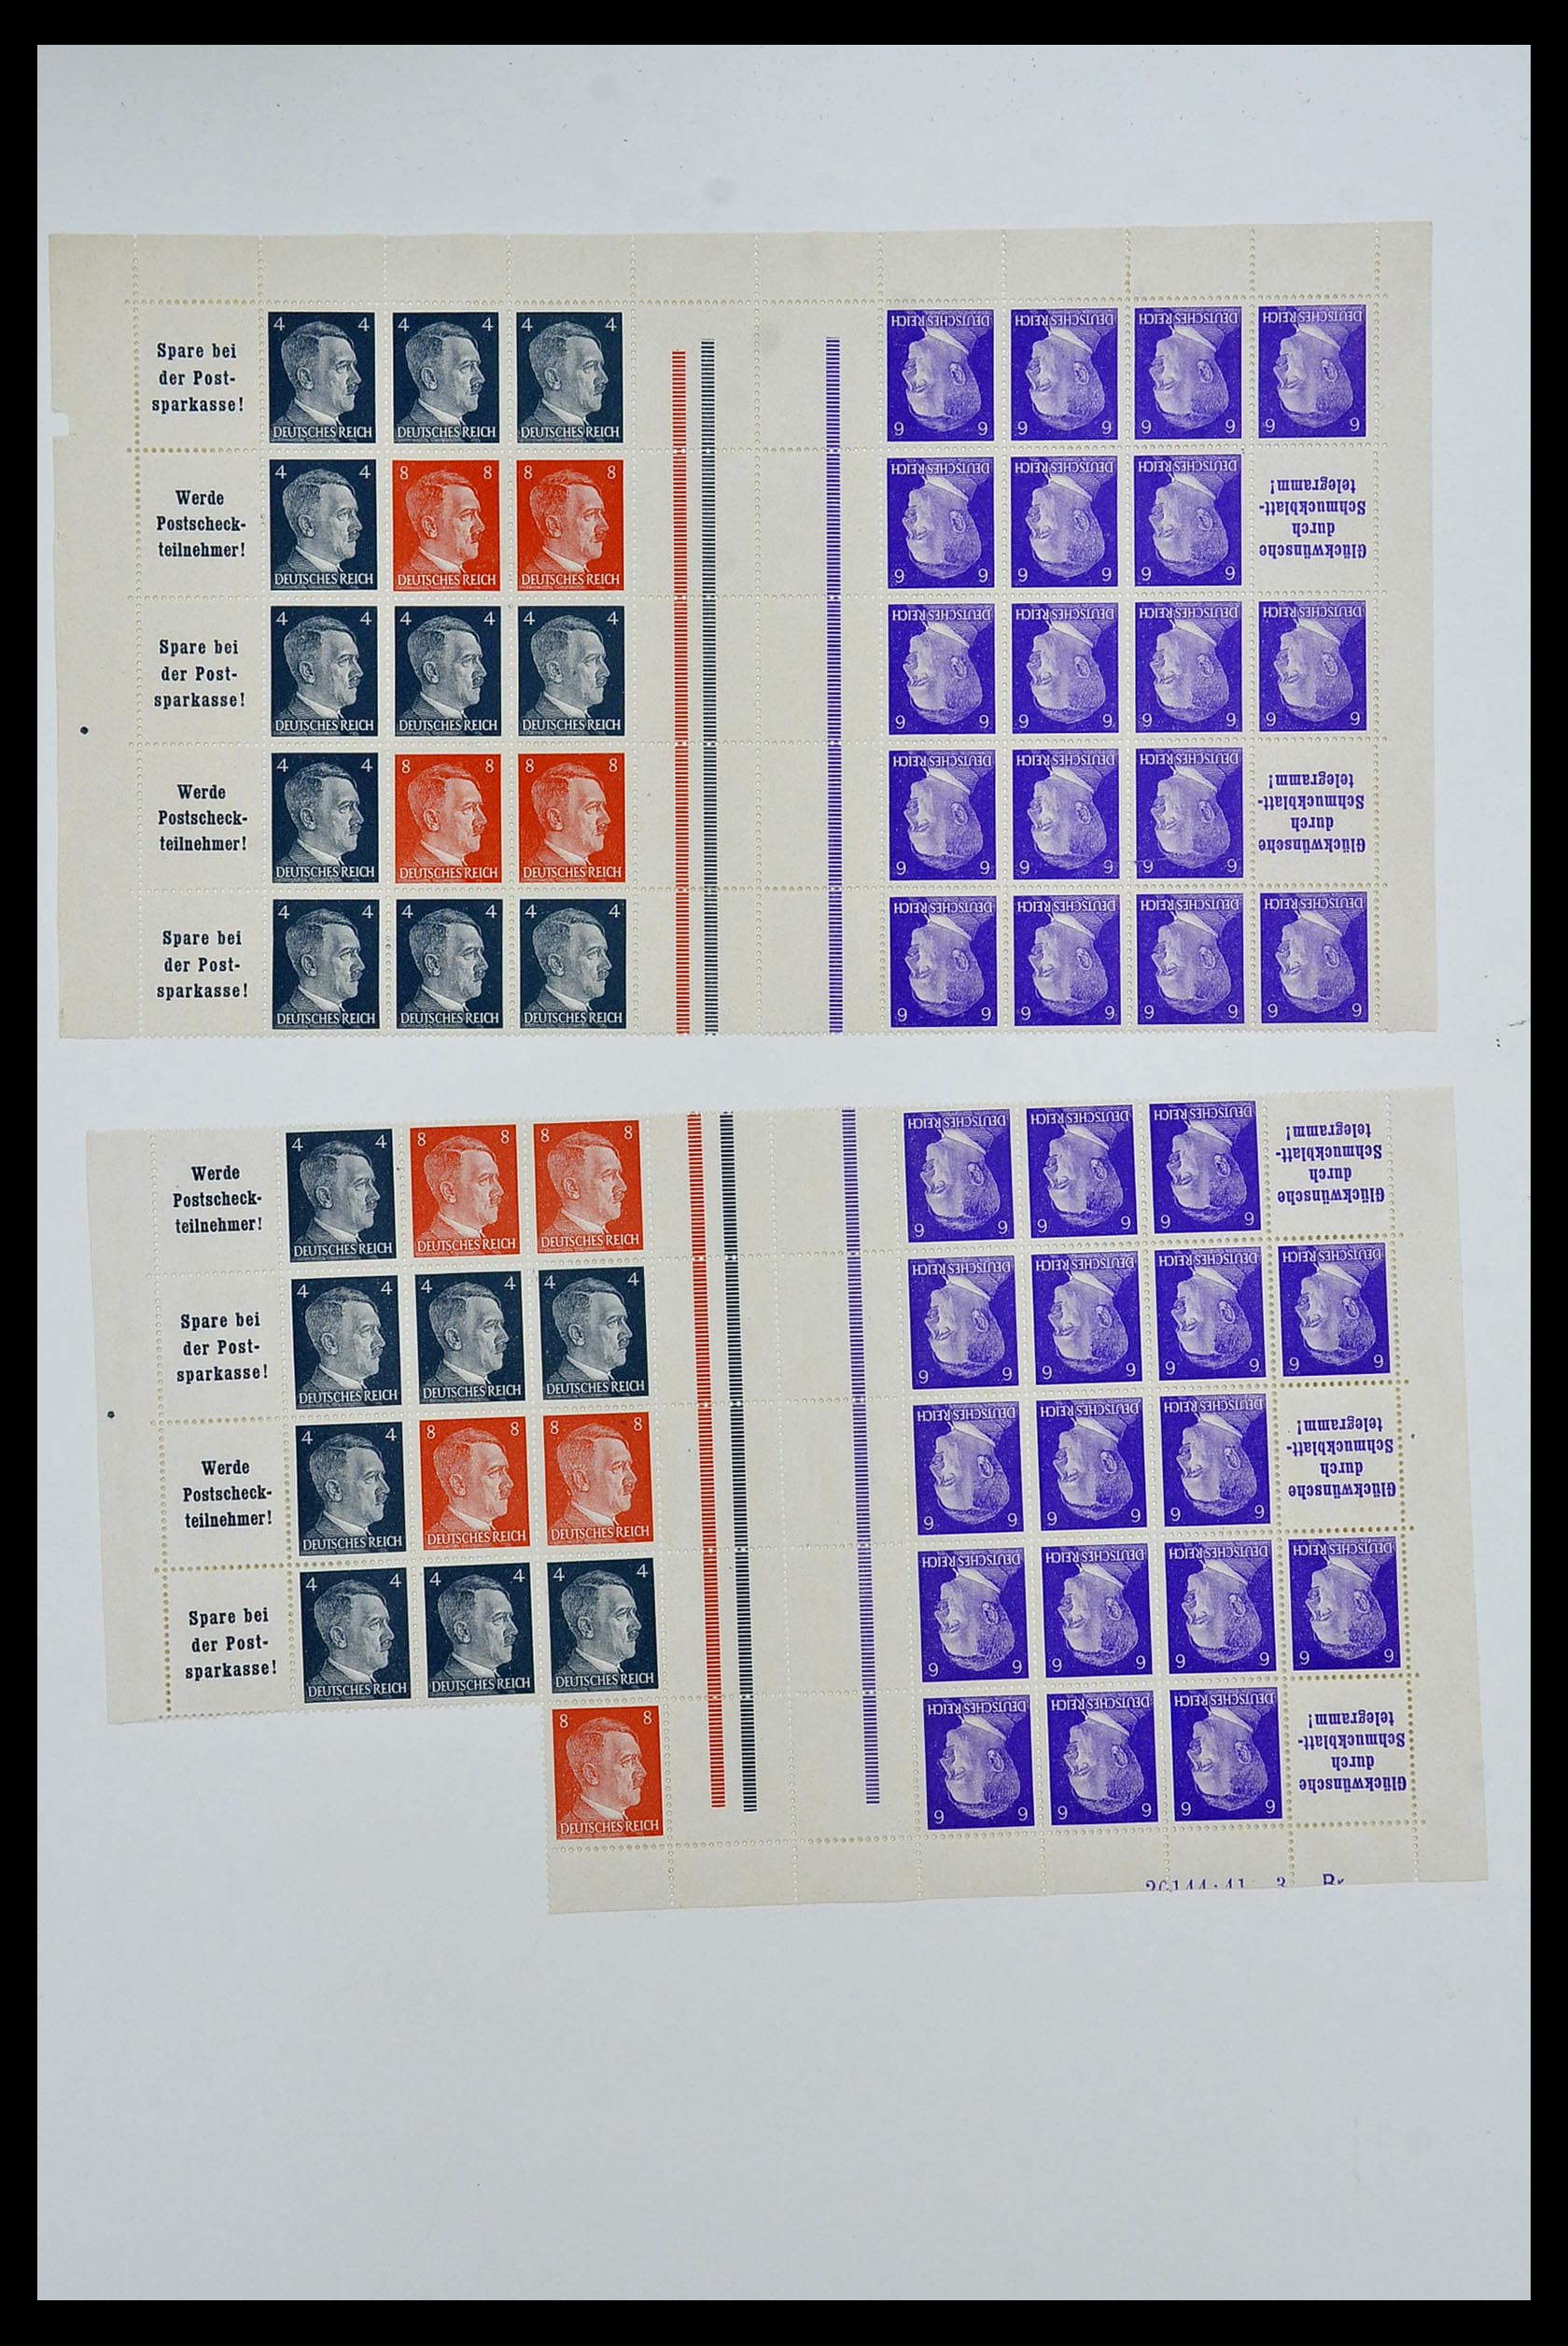 34164 079 - Stamp collection 34164 German Reich Markenheftchenbogen 1933-1942.